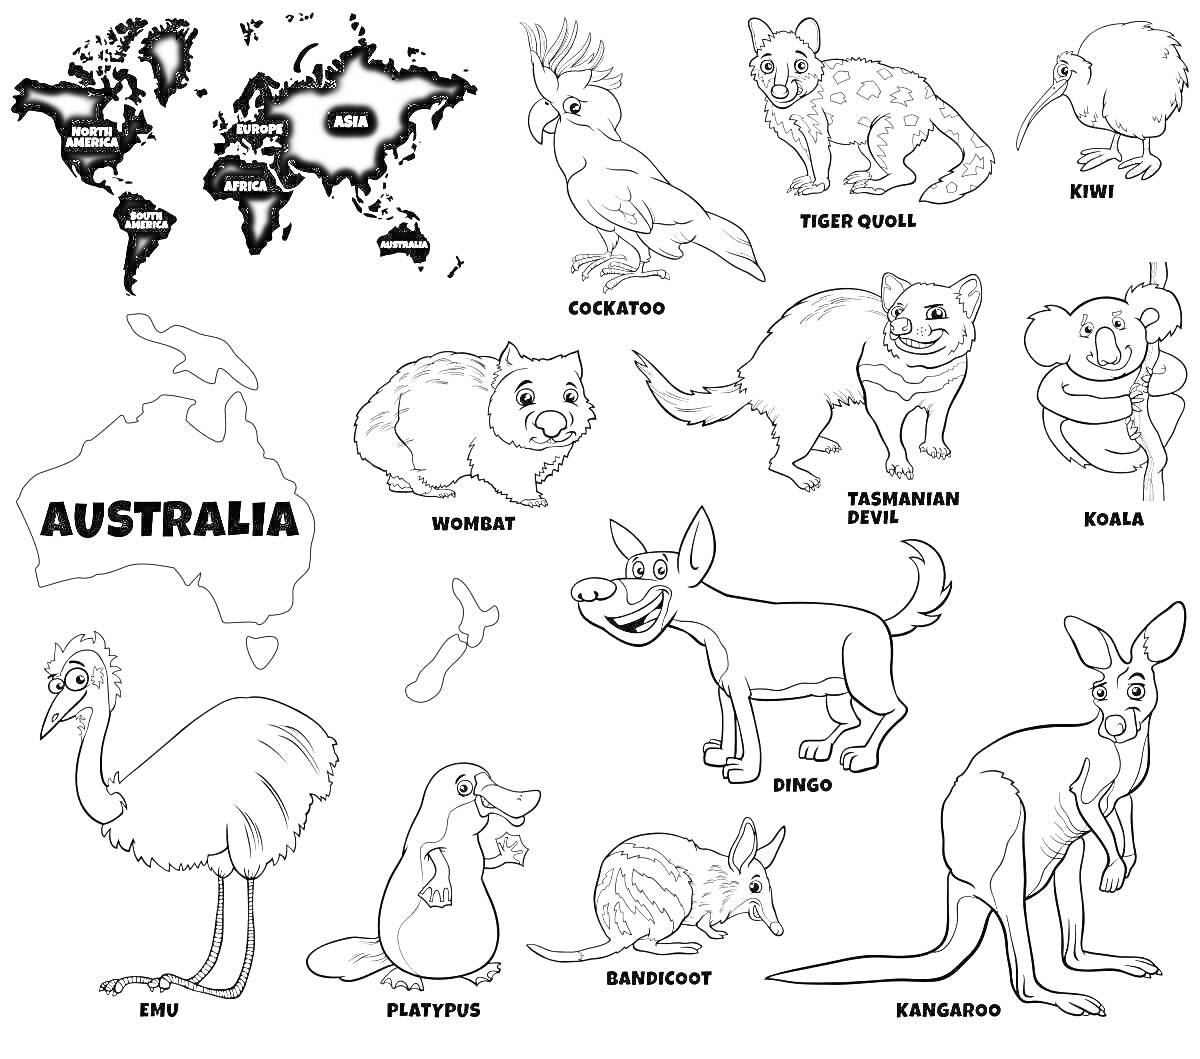 Карта мира с Австралией, карта Австралии, какаду (Cockatoo), тасманский дьявол (Tasmanian Devil), коала (Koala), вомбат (Wombat), динго (Dingo), песчанка (Bandicoot), эму (Emu), утконос (Platypus), кенгуру (Kangaroo), морская свинка (предположительно) (пр